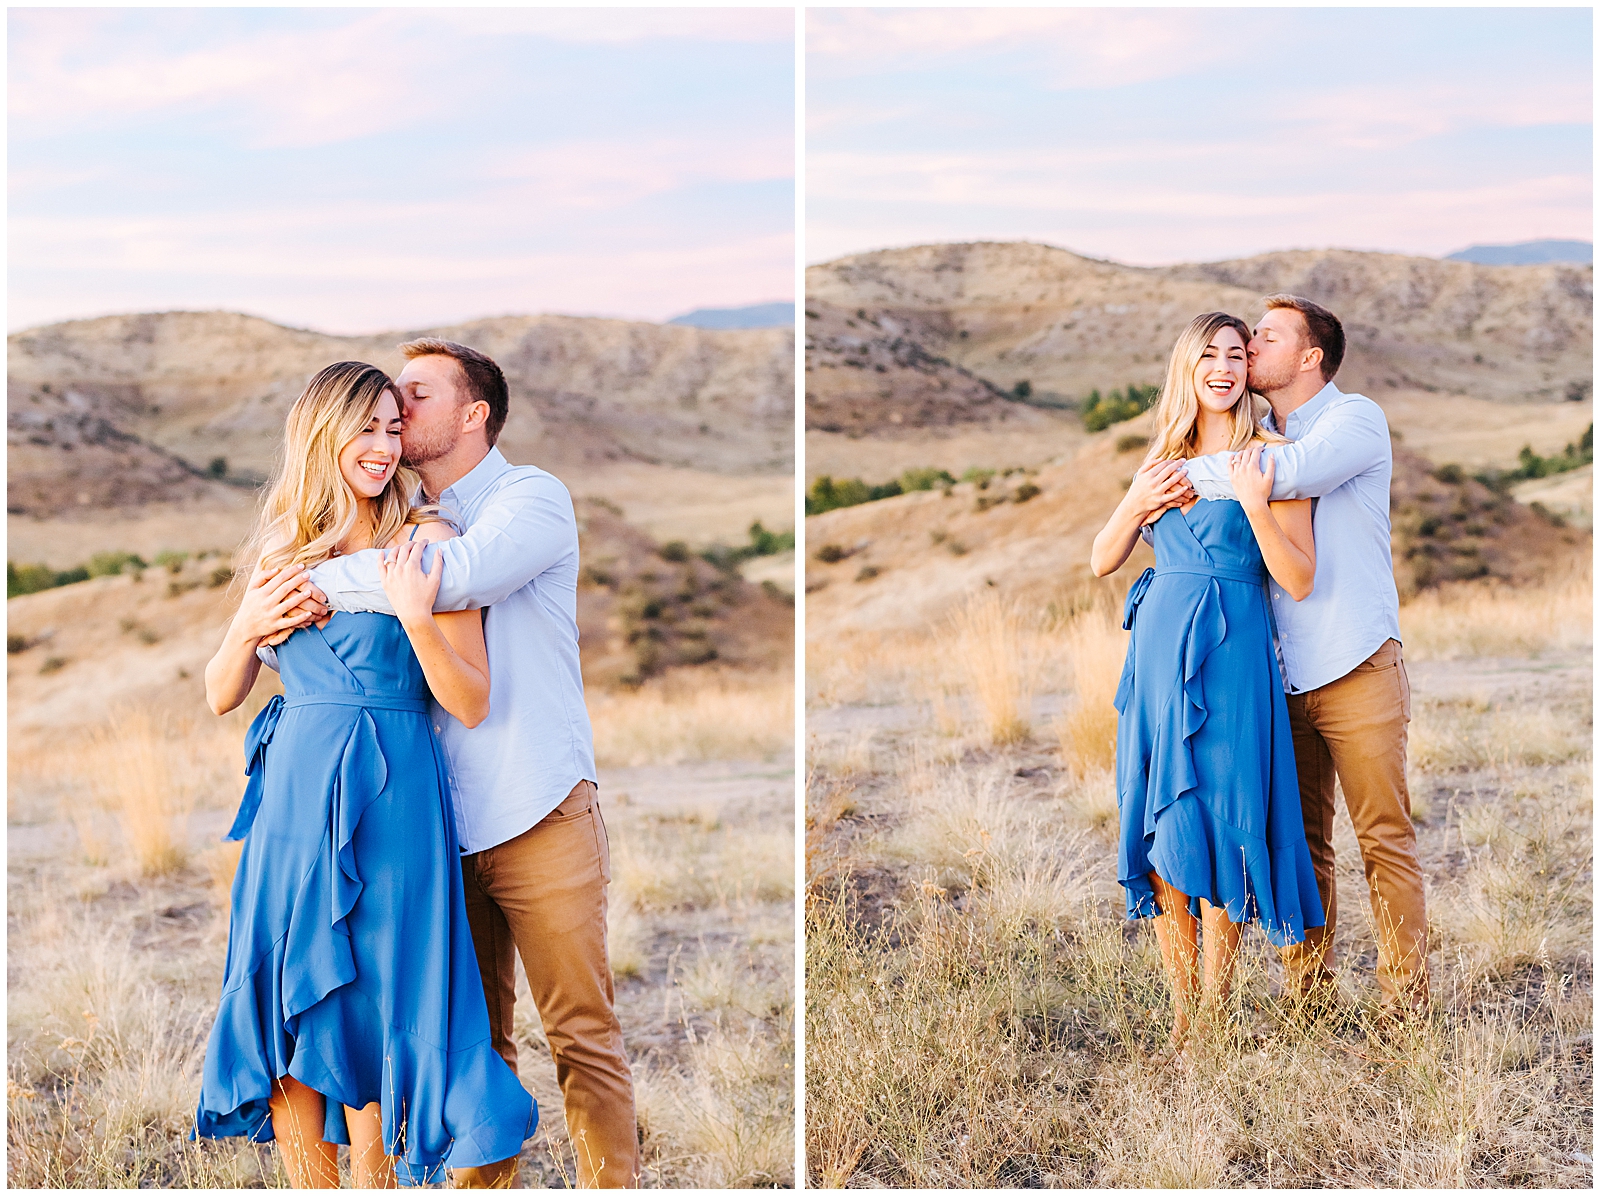 Boise Idaho Engagement and Wedding Photographer